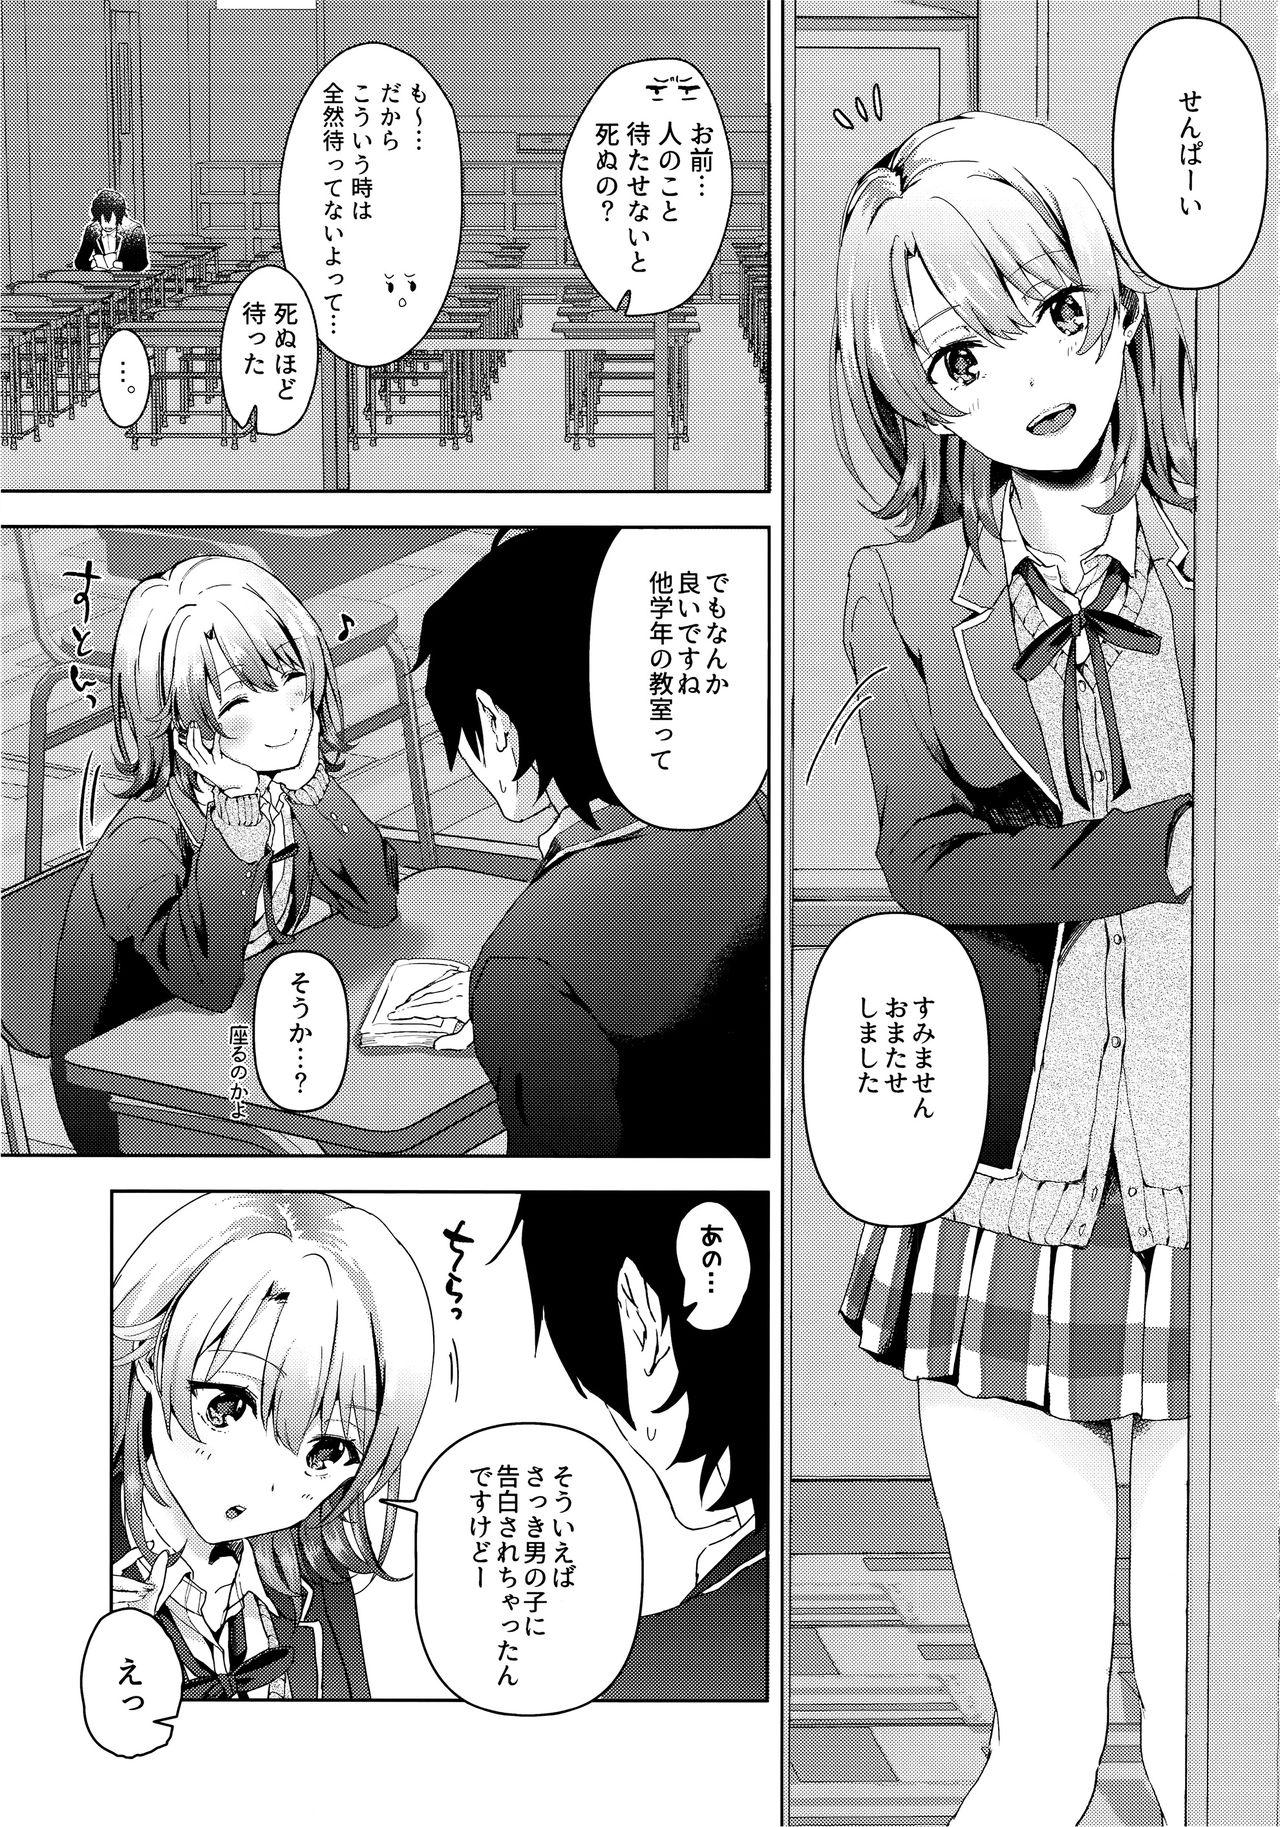 Cheating Wife Yahari Ore wa Isshiki Iroha no Shoujou de Odoritsuzukeru. - Yahari ore no seishun love come wa machigatteiru Family Sex - Page 2